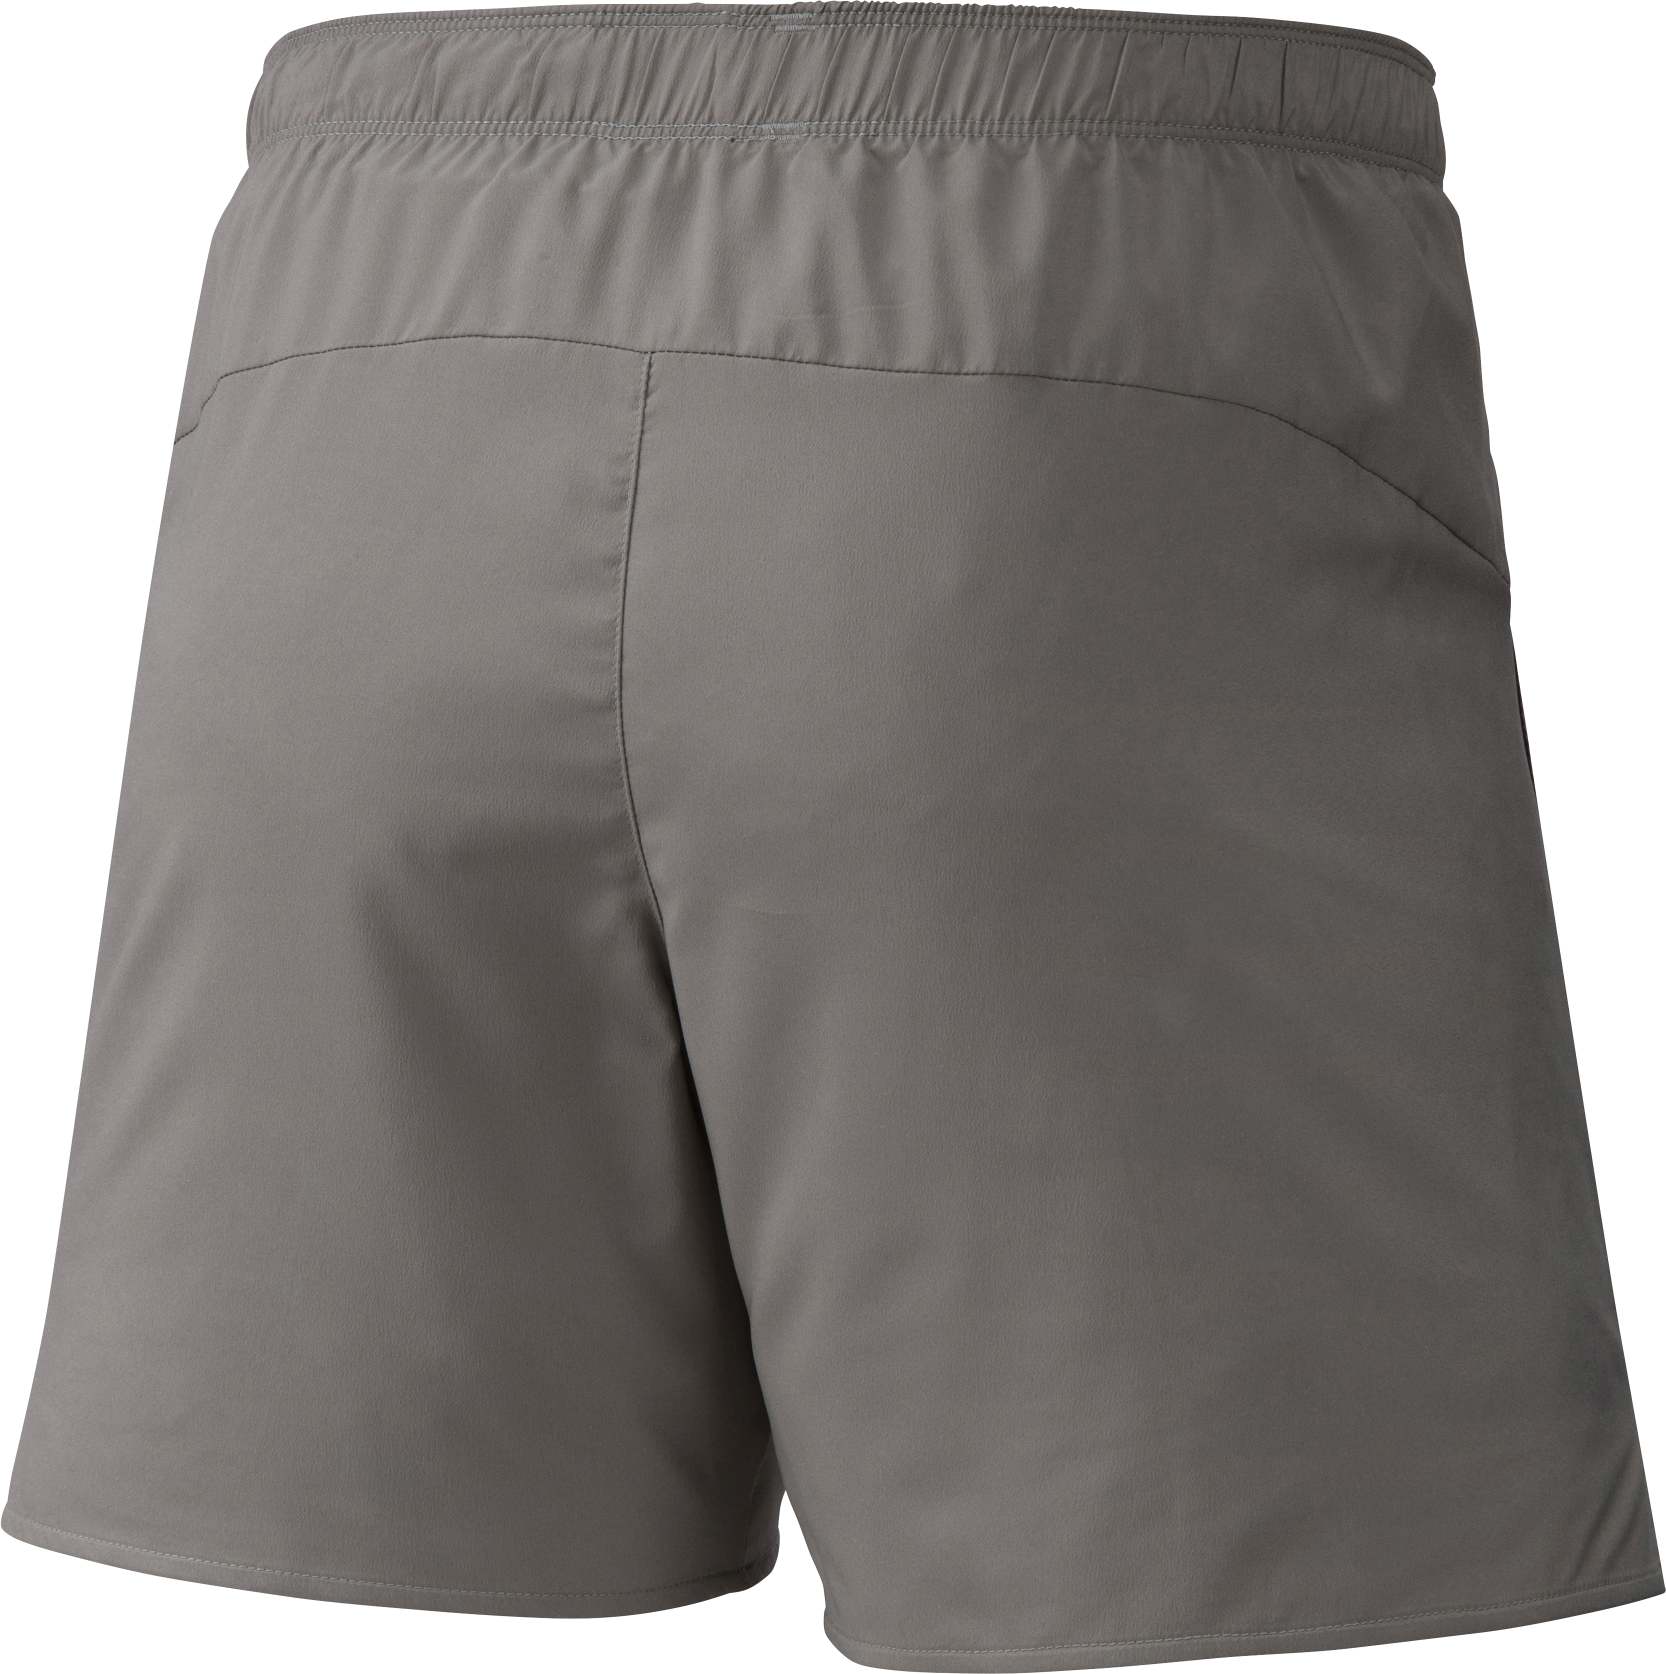 Men’s multisport shorts